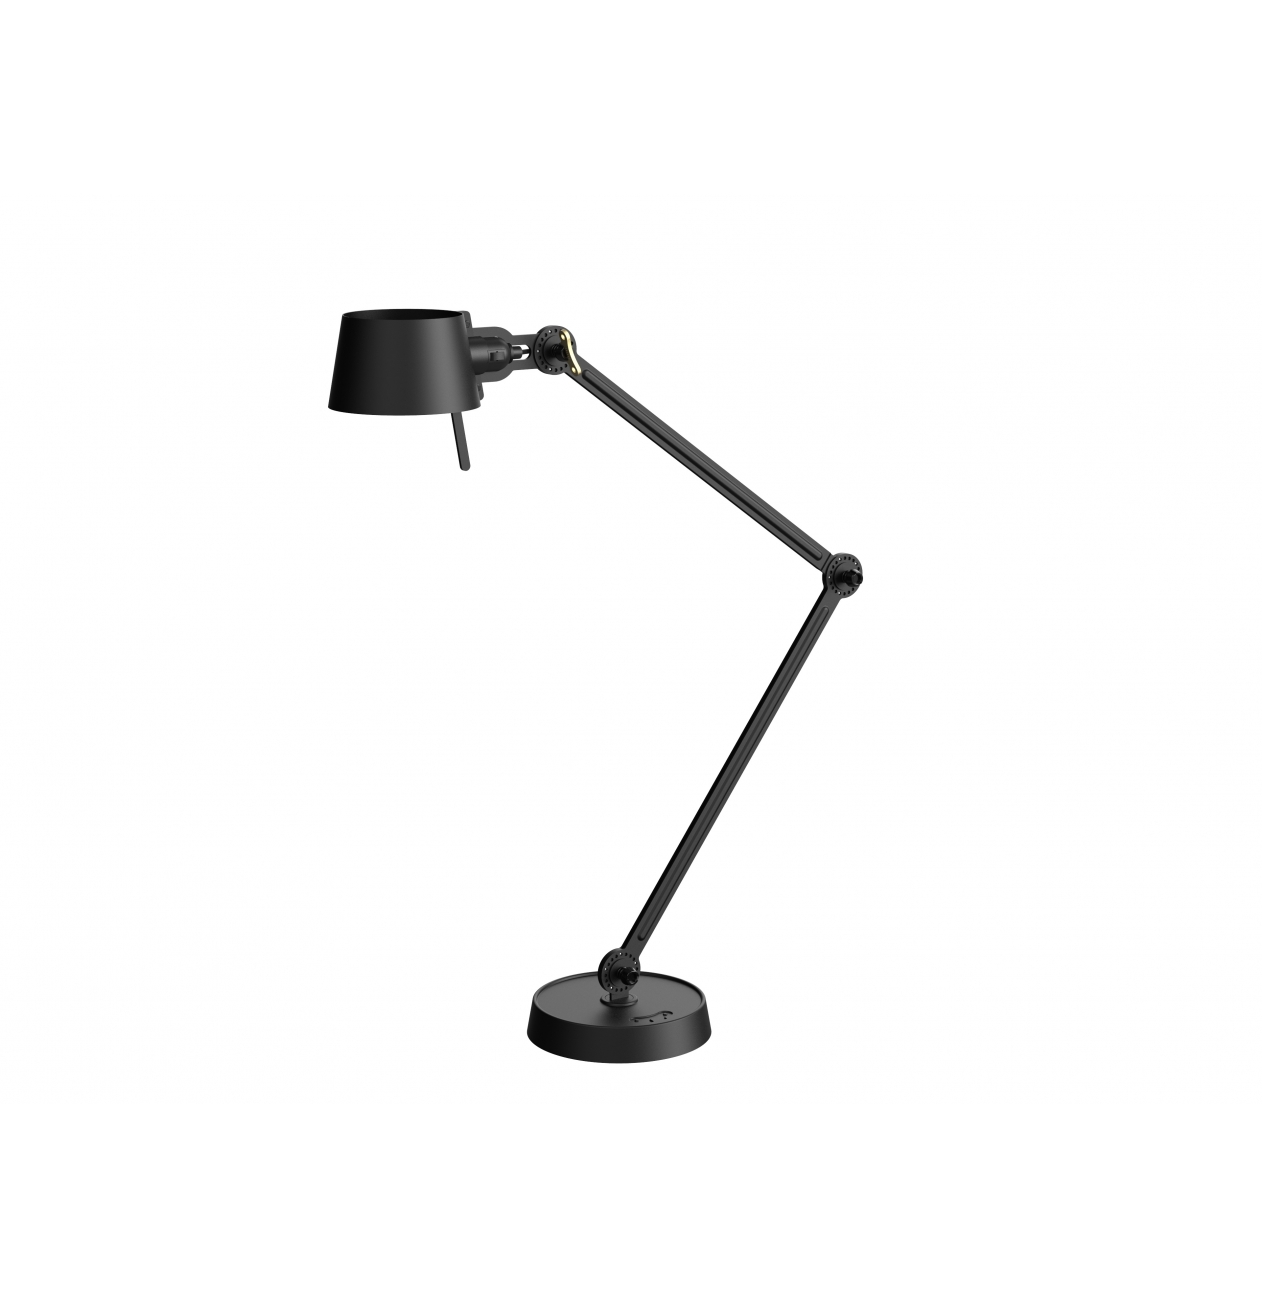 discretie Komkommer Uiterlijk Tonone - Tafellamp Bolt Desk 2 Arm Foot | Versteeg Lichtstudio